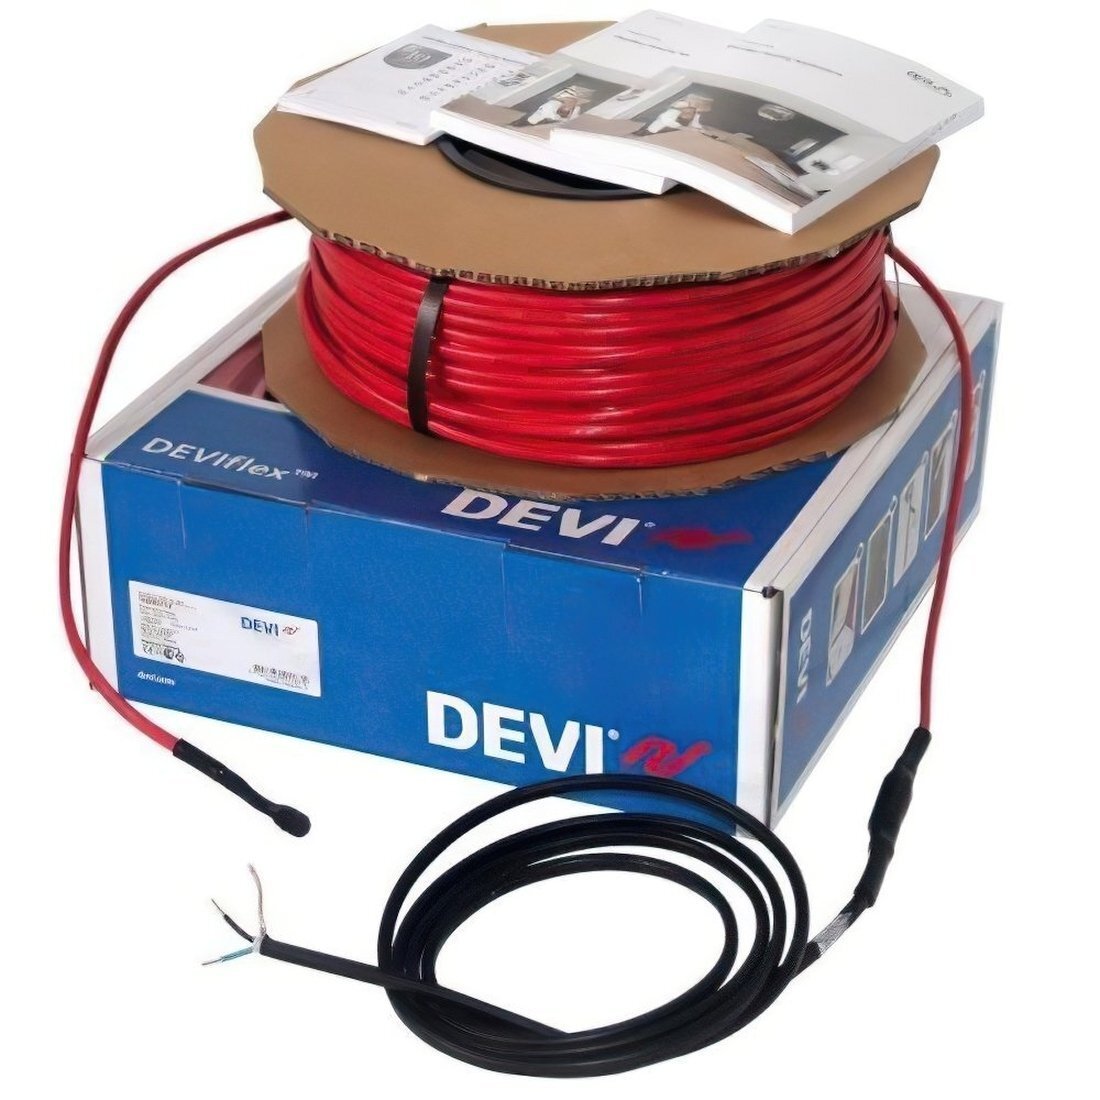 Теплый пол DEVI Flex двухжильный нагревательный кабель 18T, 1485 Вт, 230V, 82м (140F1247) фото 